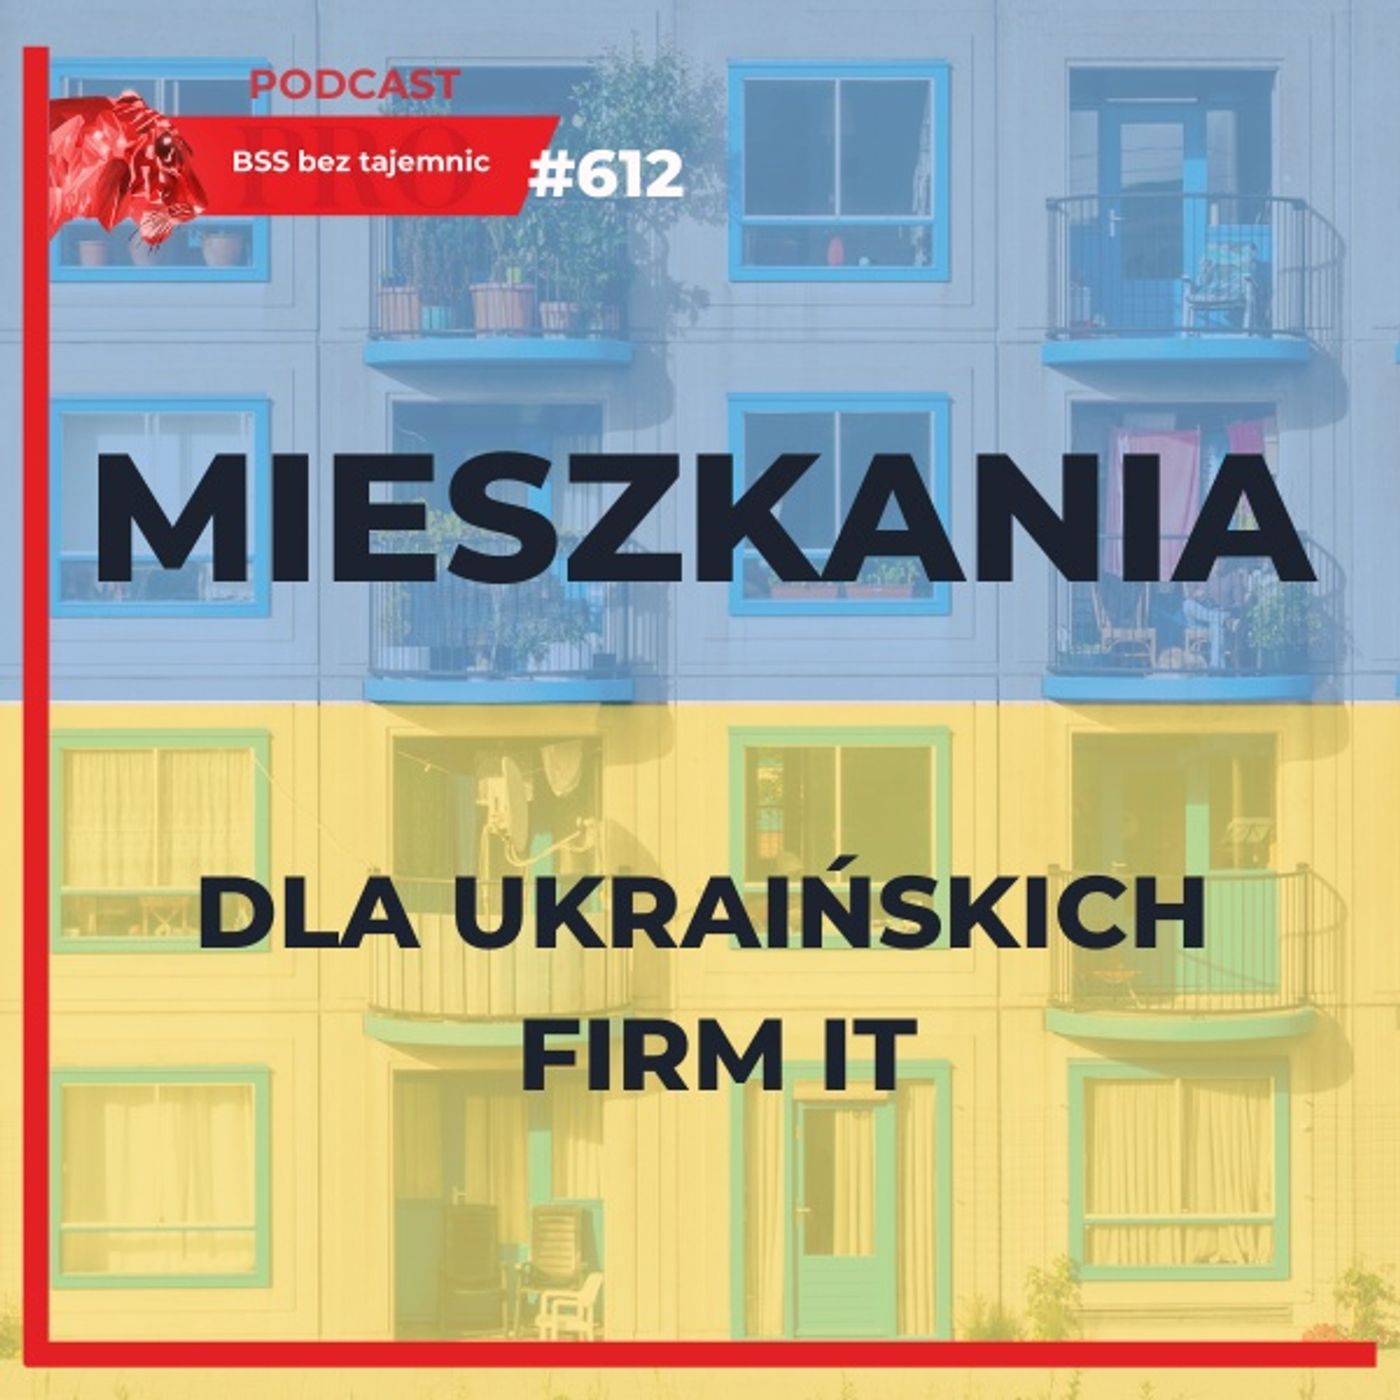 #612 UKRAIŃSKIE firmy będą potrzebować setek mieszkań w Polsce